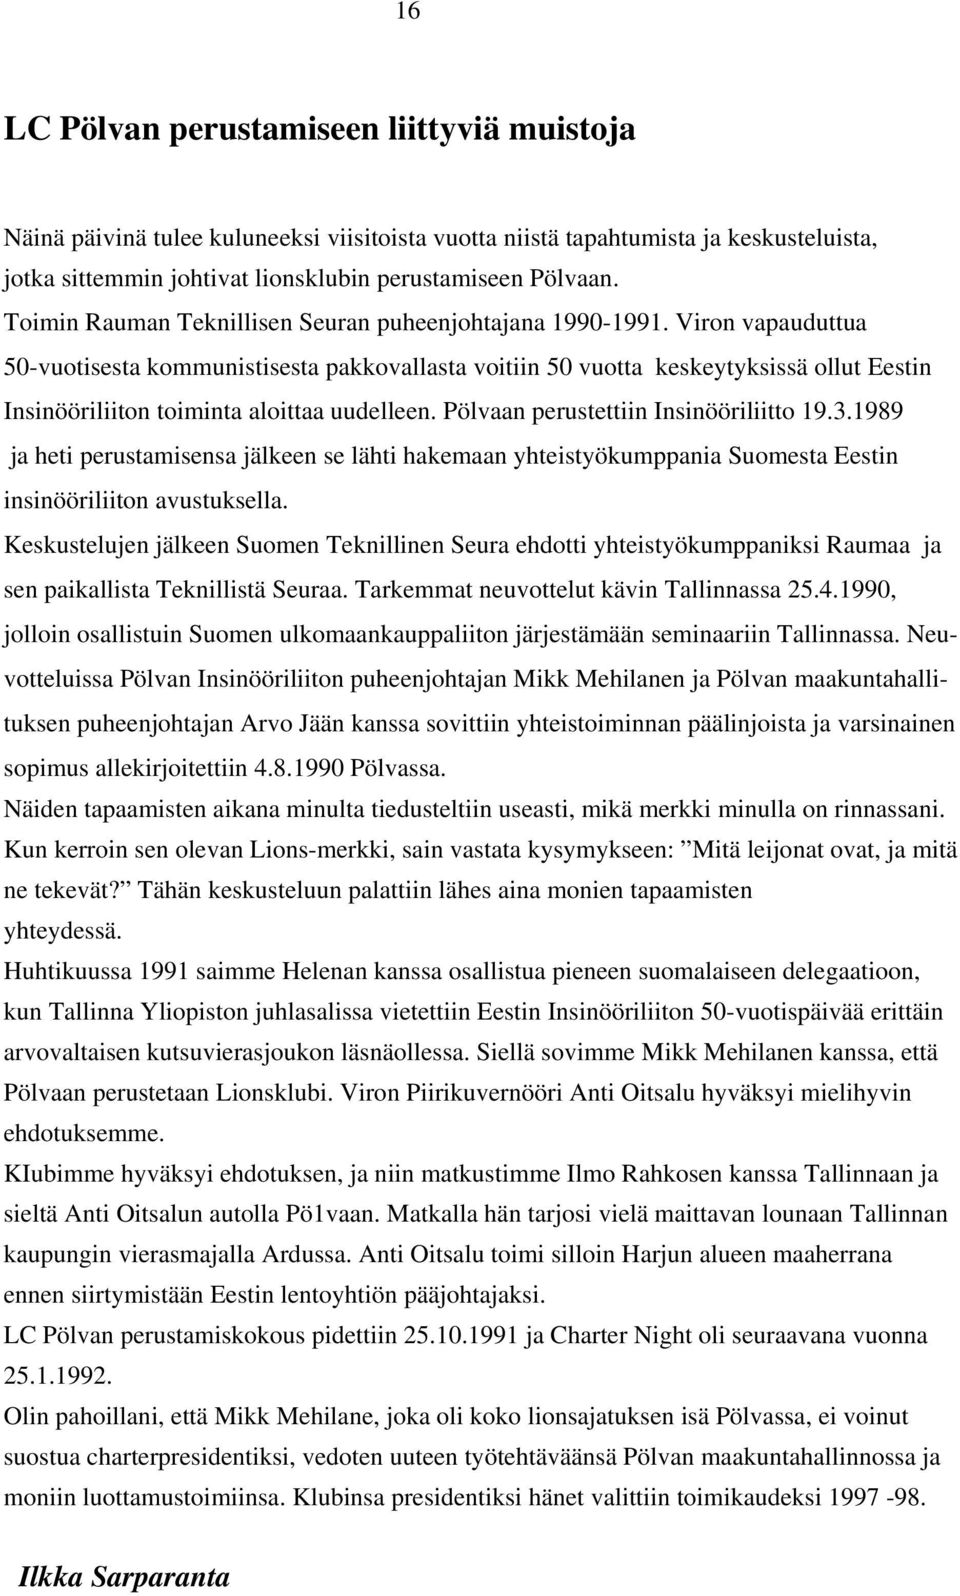 Viron vapauduttua 50-vuotisesta kommunistisesta pakkovallasta voitiin 50 vuotta keskeytyksissä ollut Eestin Insinööriliiton toiminta aloittaa uudelleen. Pölvaan perustettiin Insinööriliitto 19.3.